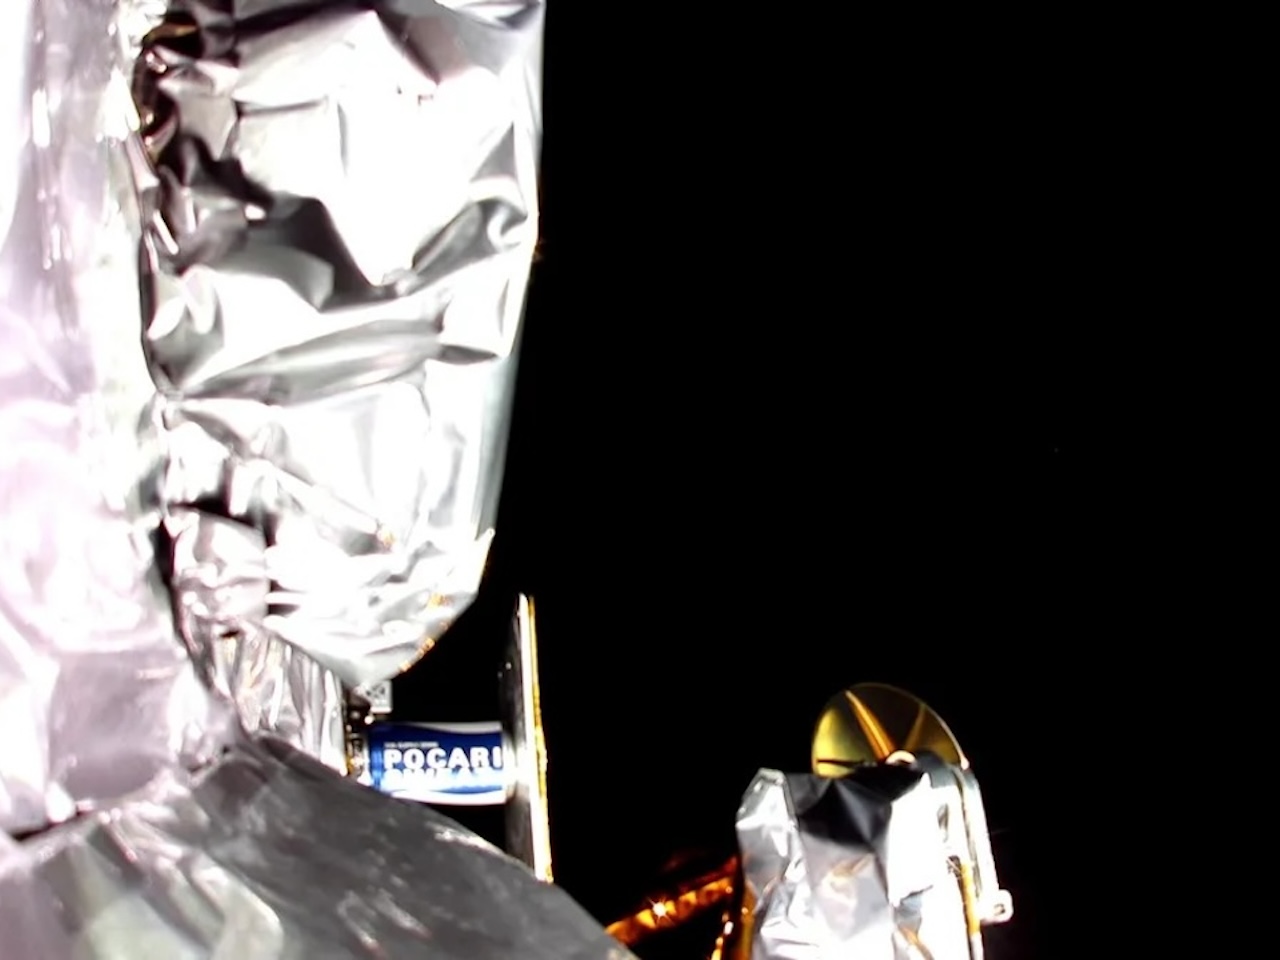 月着陸を断念した「ペレグリン」、地球の大気圏で燃え尽きる可能性